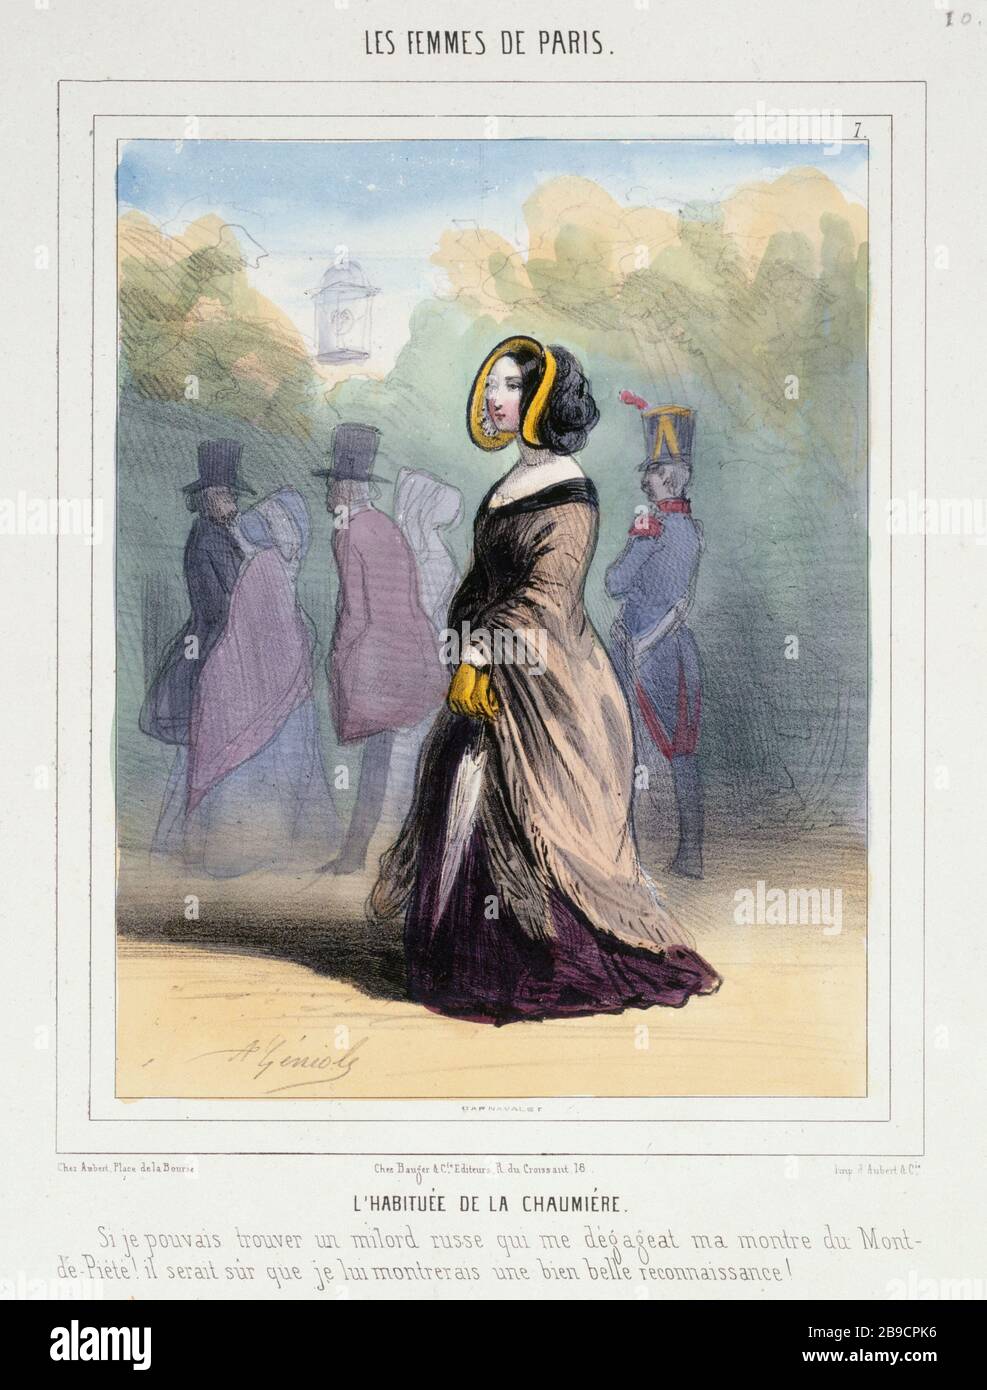 WOMEN OF PARIS - The Novice OF COTTAGE Alfred Geniole (1813-1861). 'Les Femmes de Paris - L'habituée de la Chaumière'. Gravure. Paris, musée Carnavalet. Stock Photo